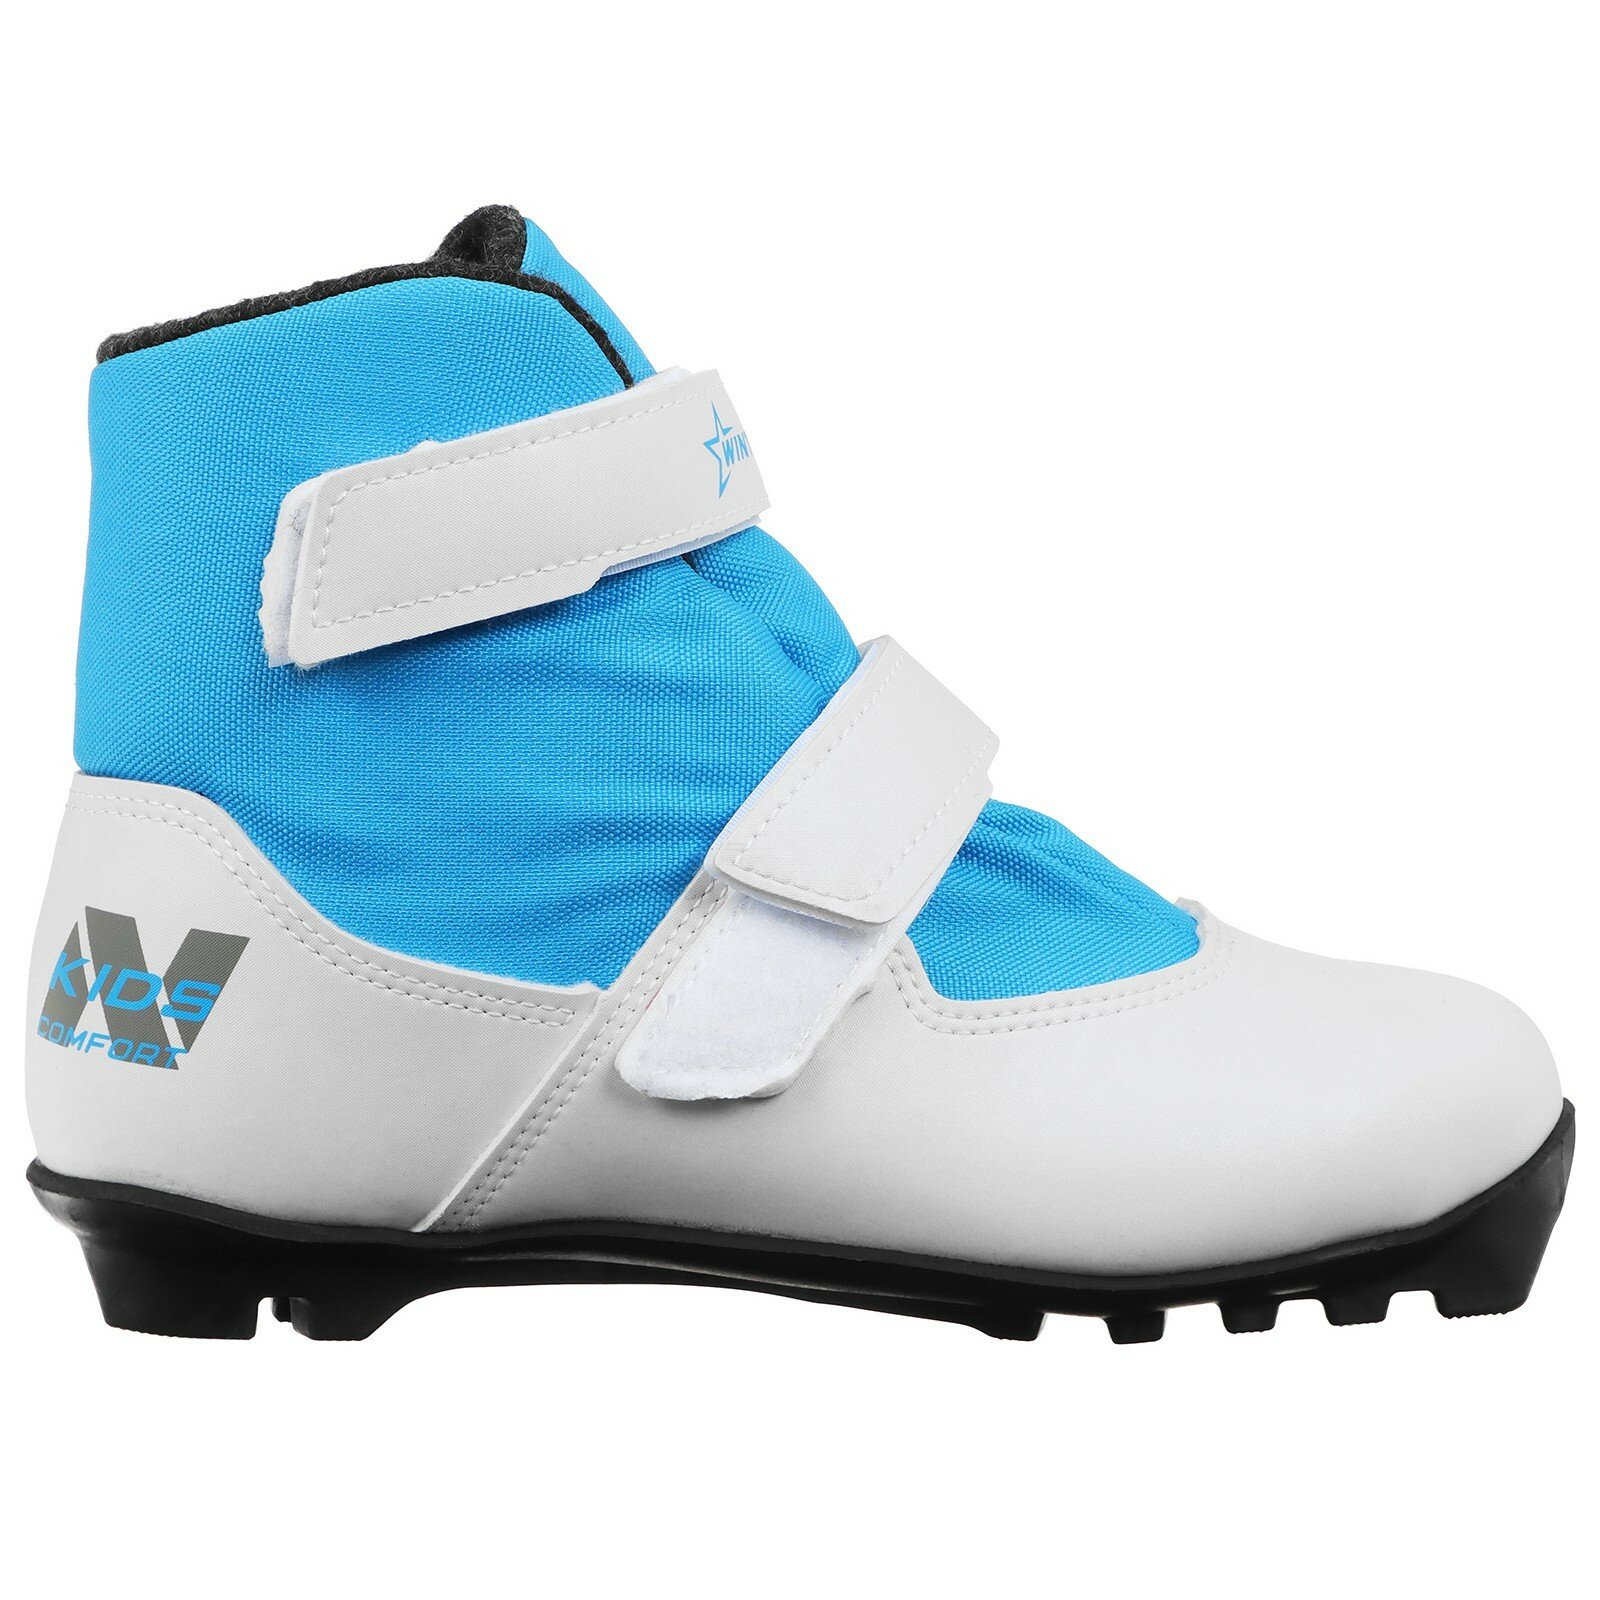 Ботинки лыжные детские Winter Star comfort kids, NNN, размер 37, цвет белый, синий